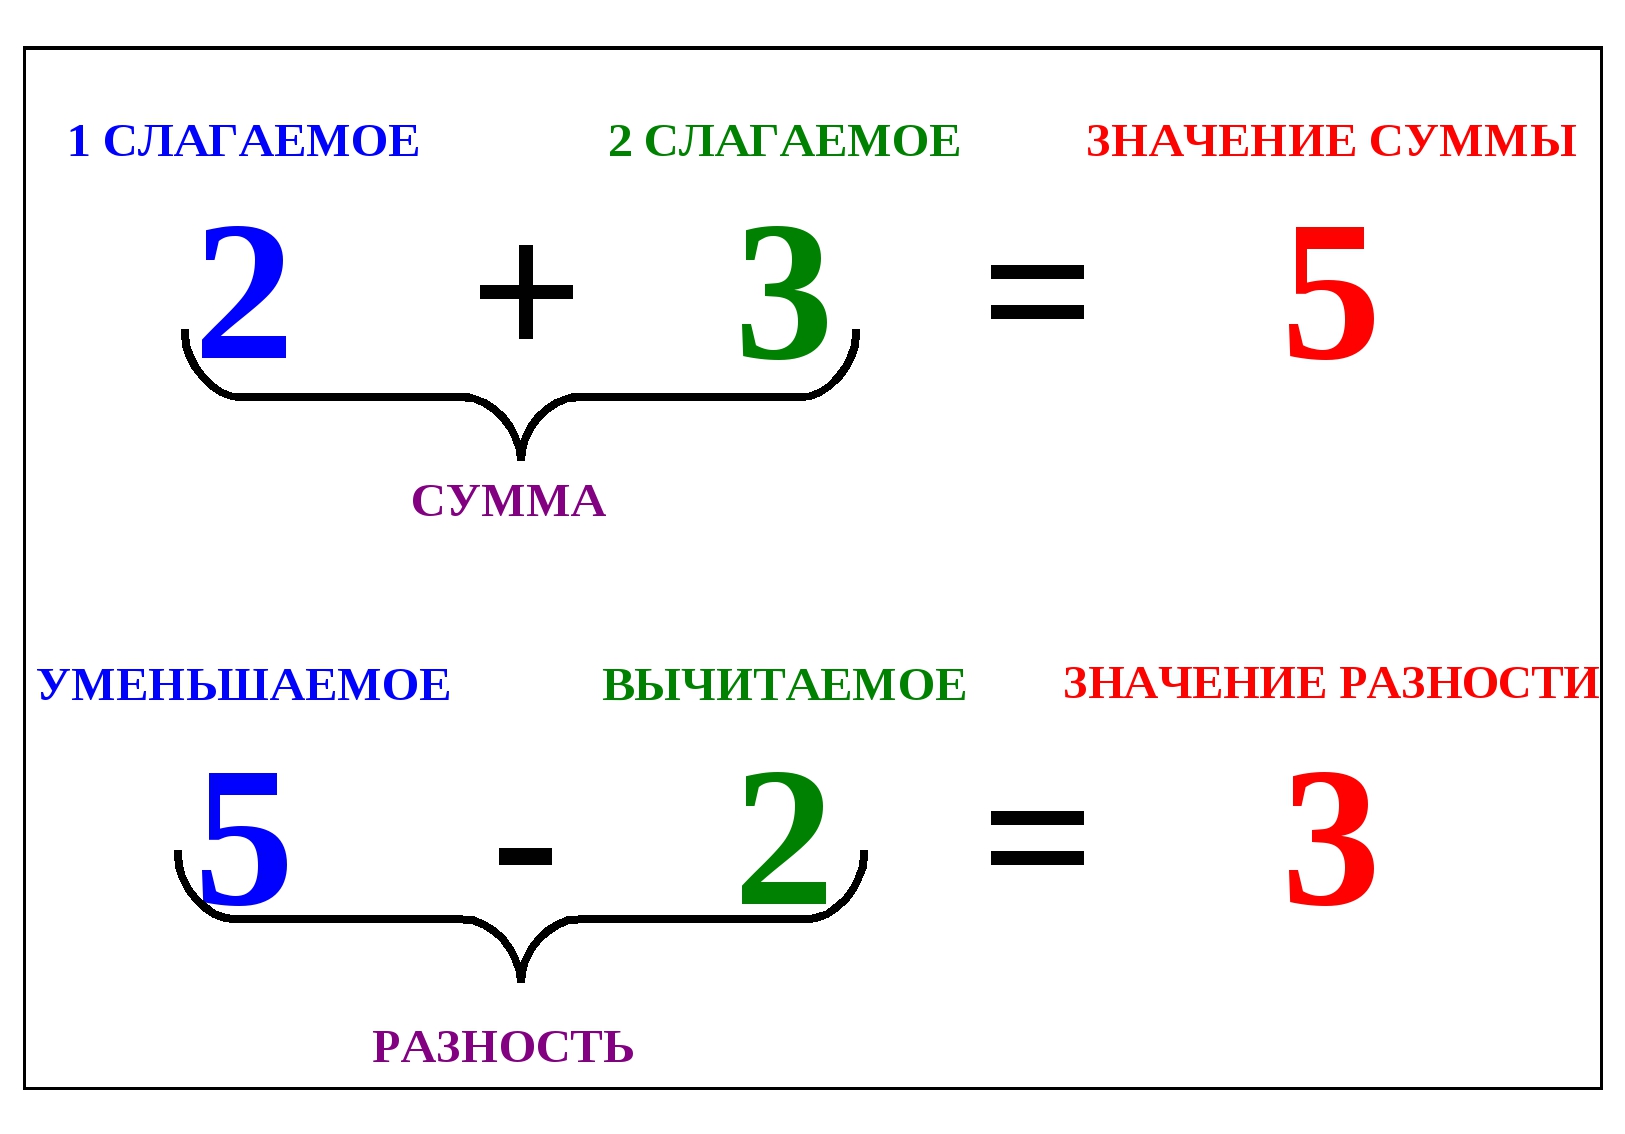 Сумма разность a b c. Правило 1 класса по математике уменьшаемое вычитаемое. Таблица название компонентов при вычитании. Слагаемое слагаемое сумма 1 класс. Слагаемое слагаемое сумма 1 класс таблица.